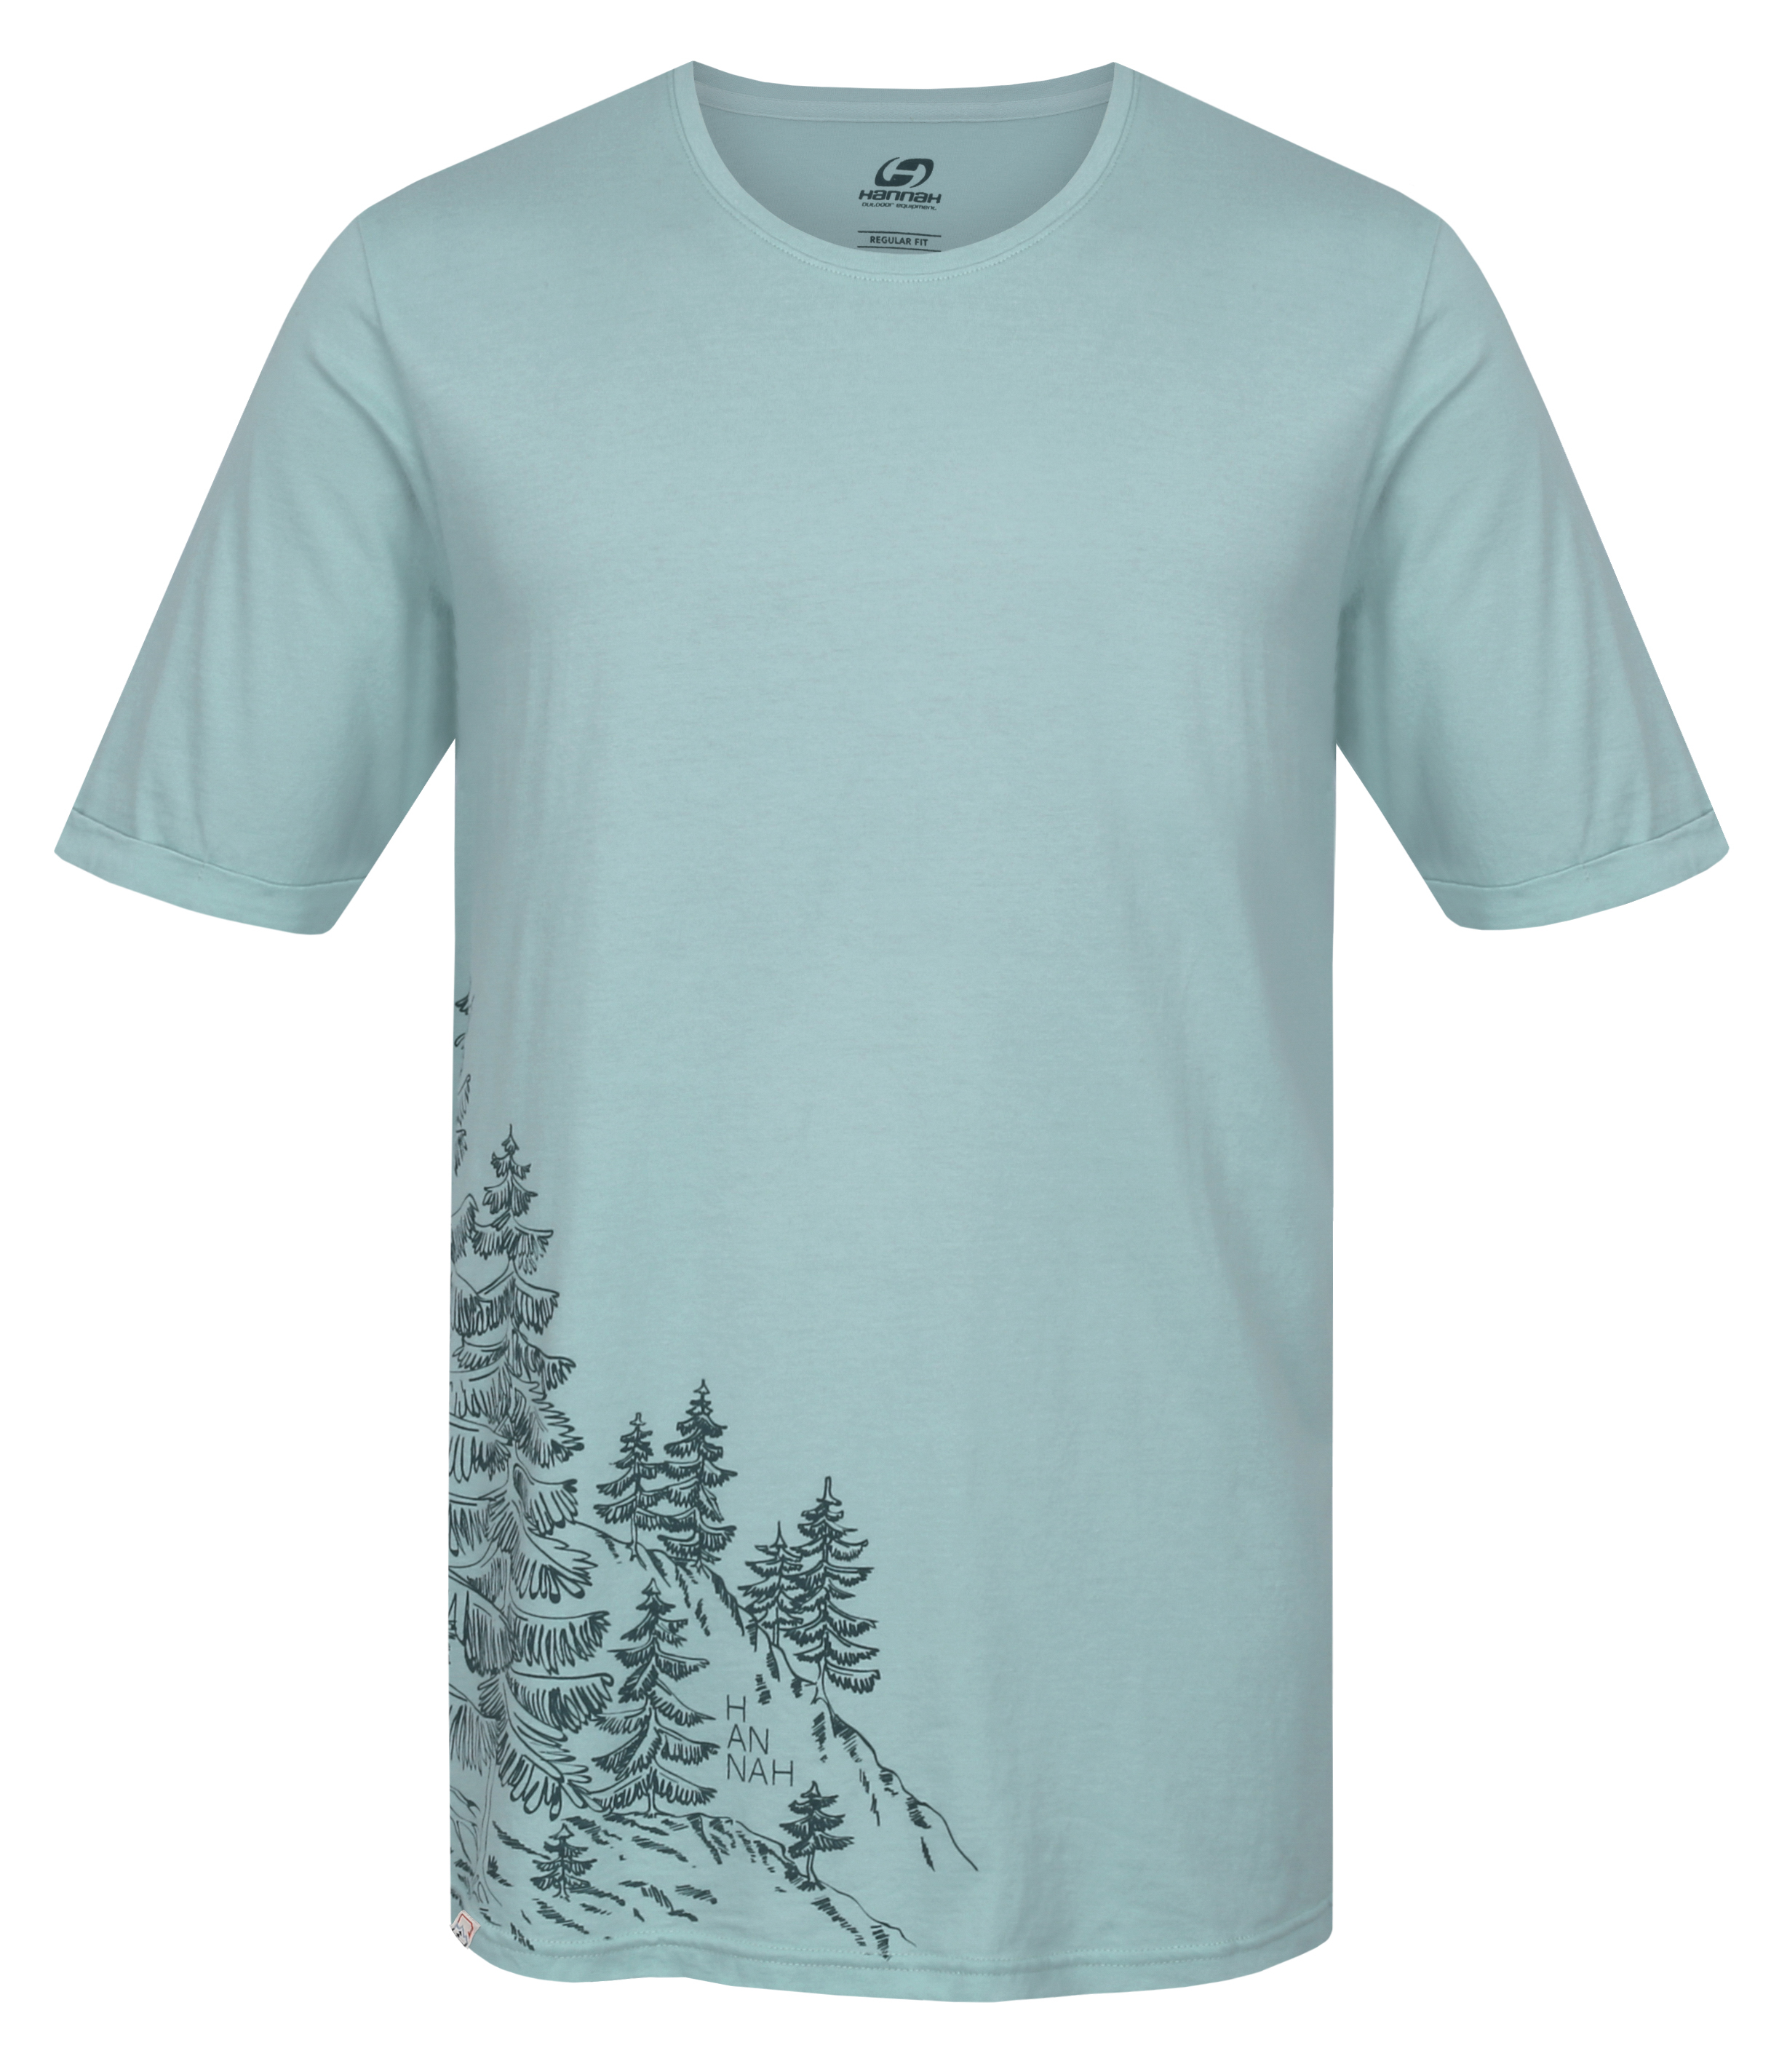 Hannah FLIT harbor gray Velikost: L pánské tričko s krátkým rukávem